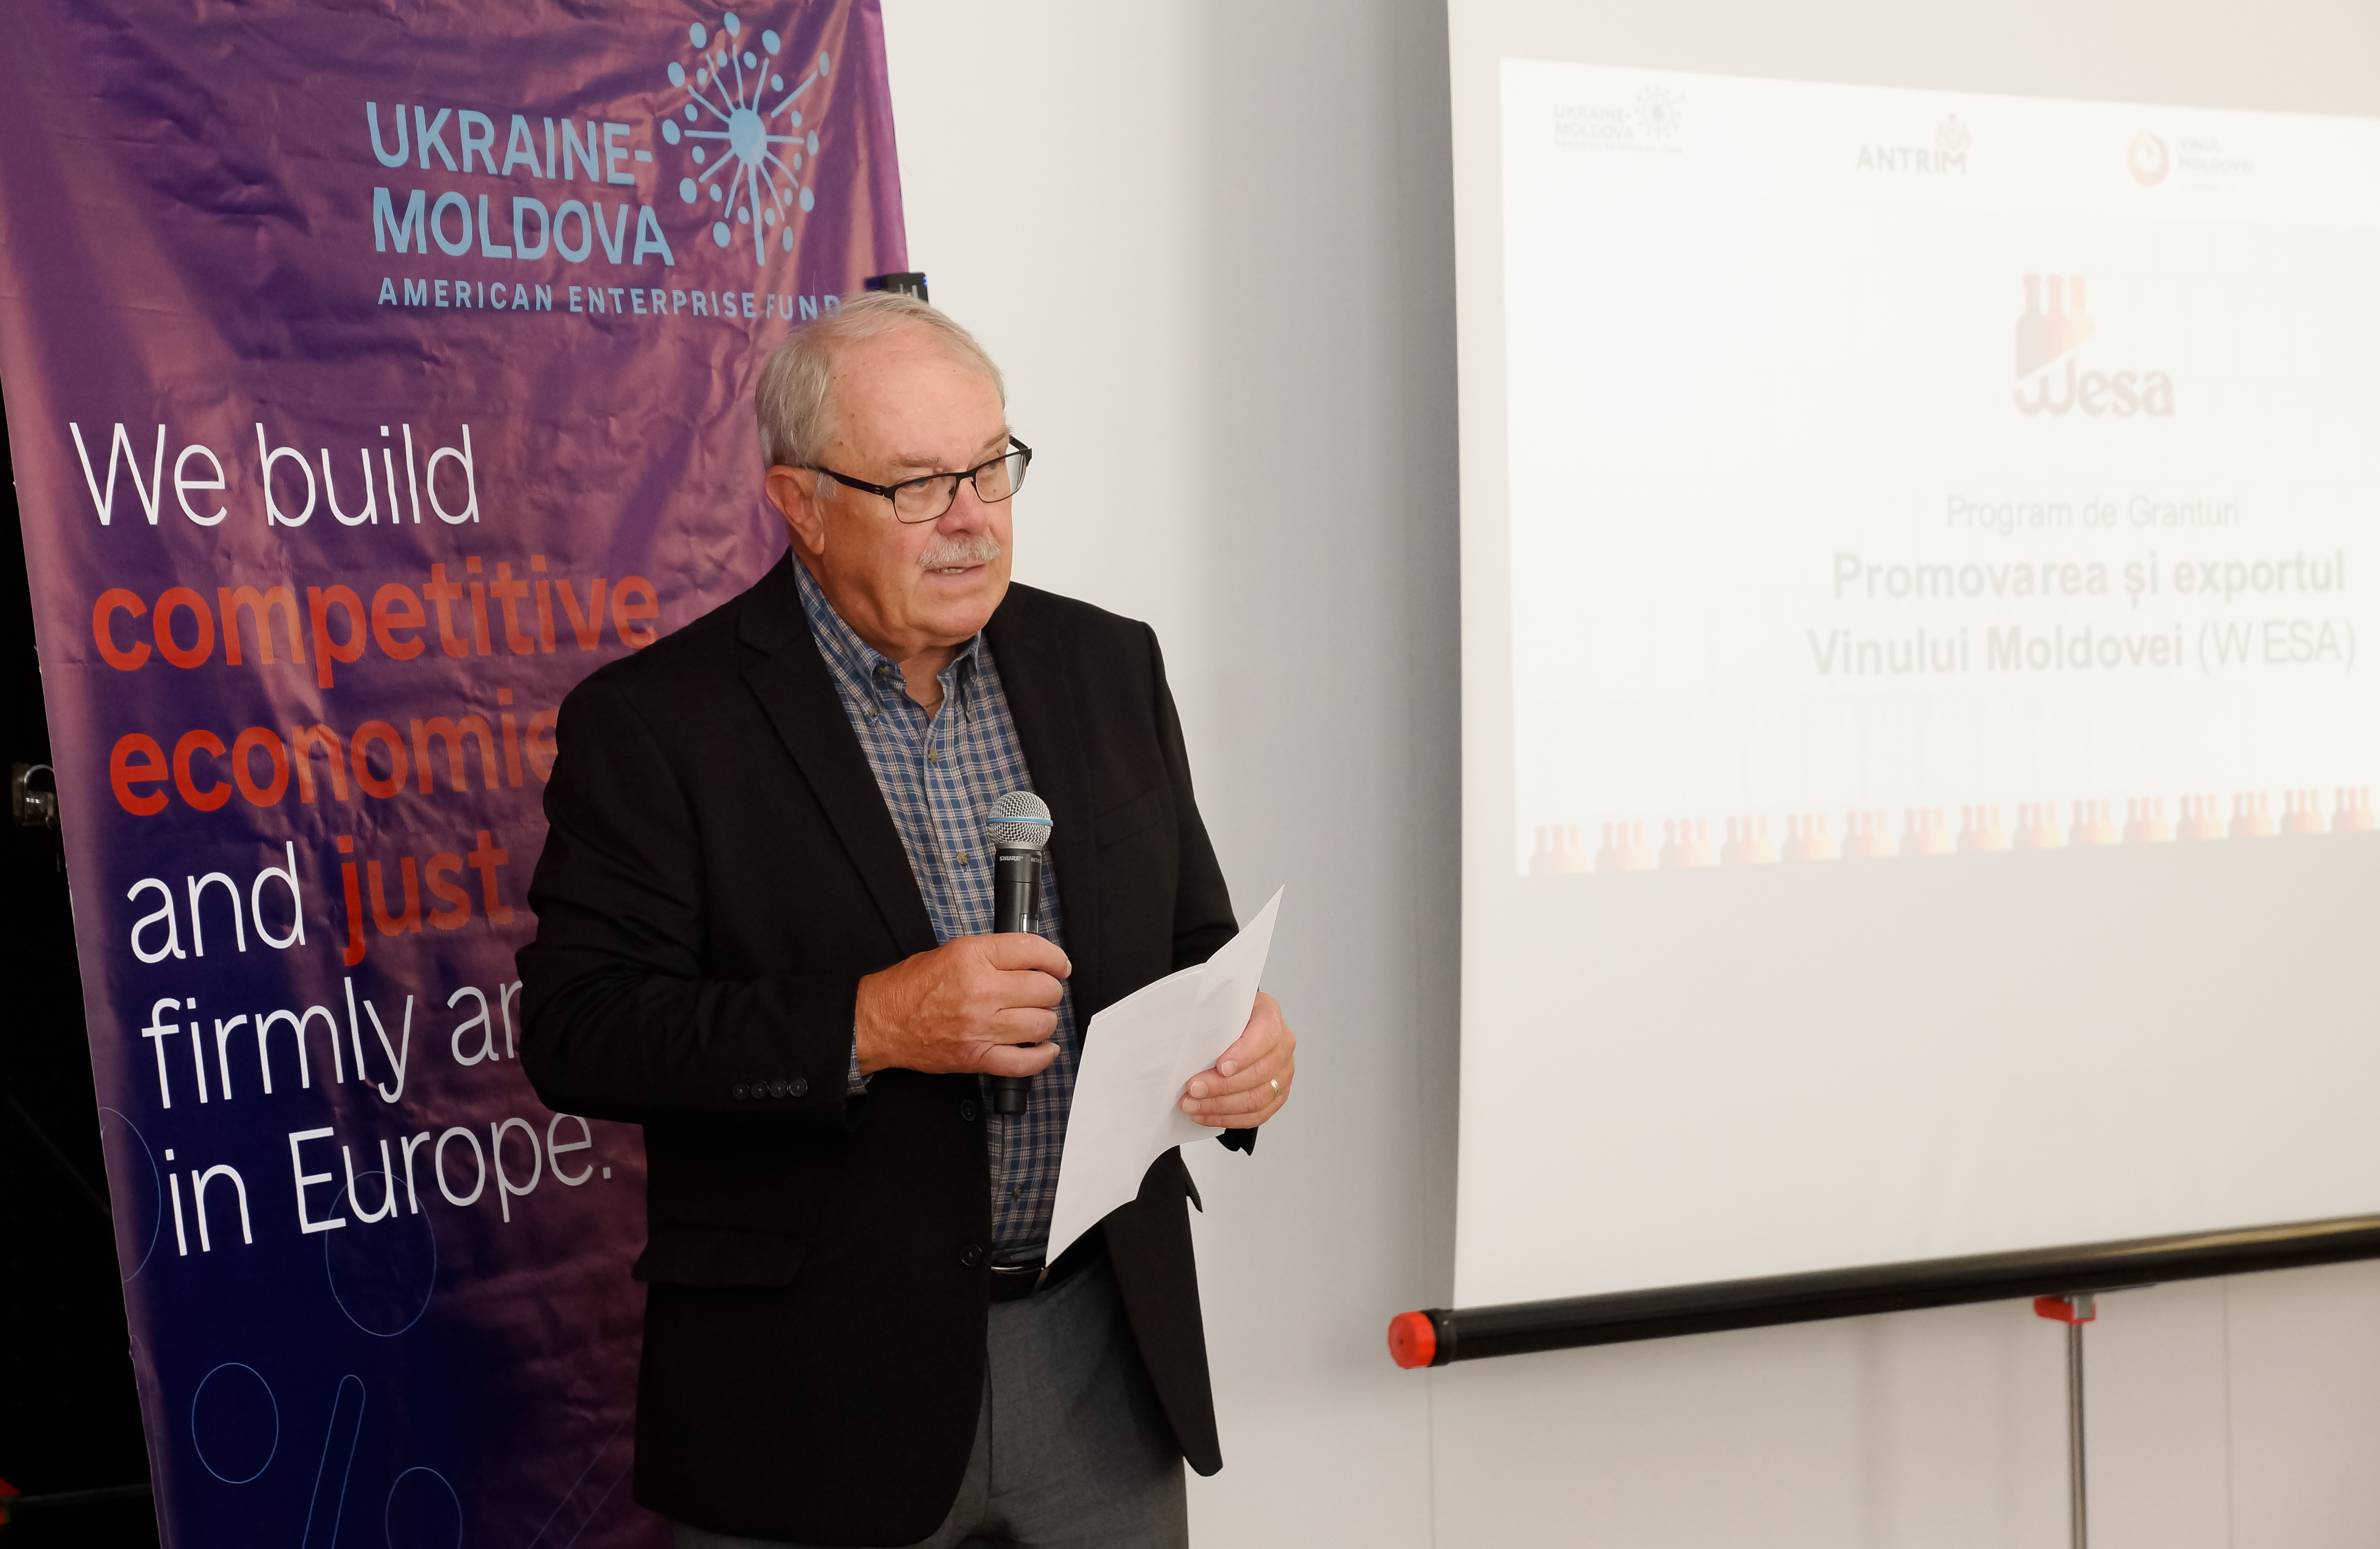 Lansarea programului de granturi WESA cu sprijinul Ukraine-Moldova American Enterprise Fund, pentru exportatorii de vinuri din Moldova